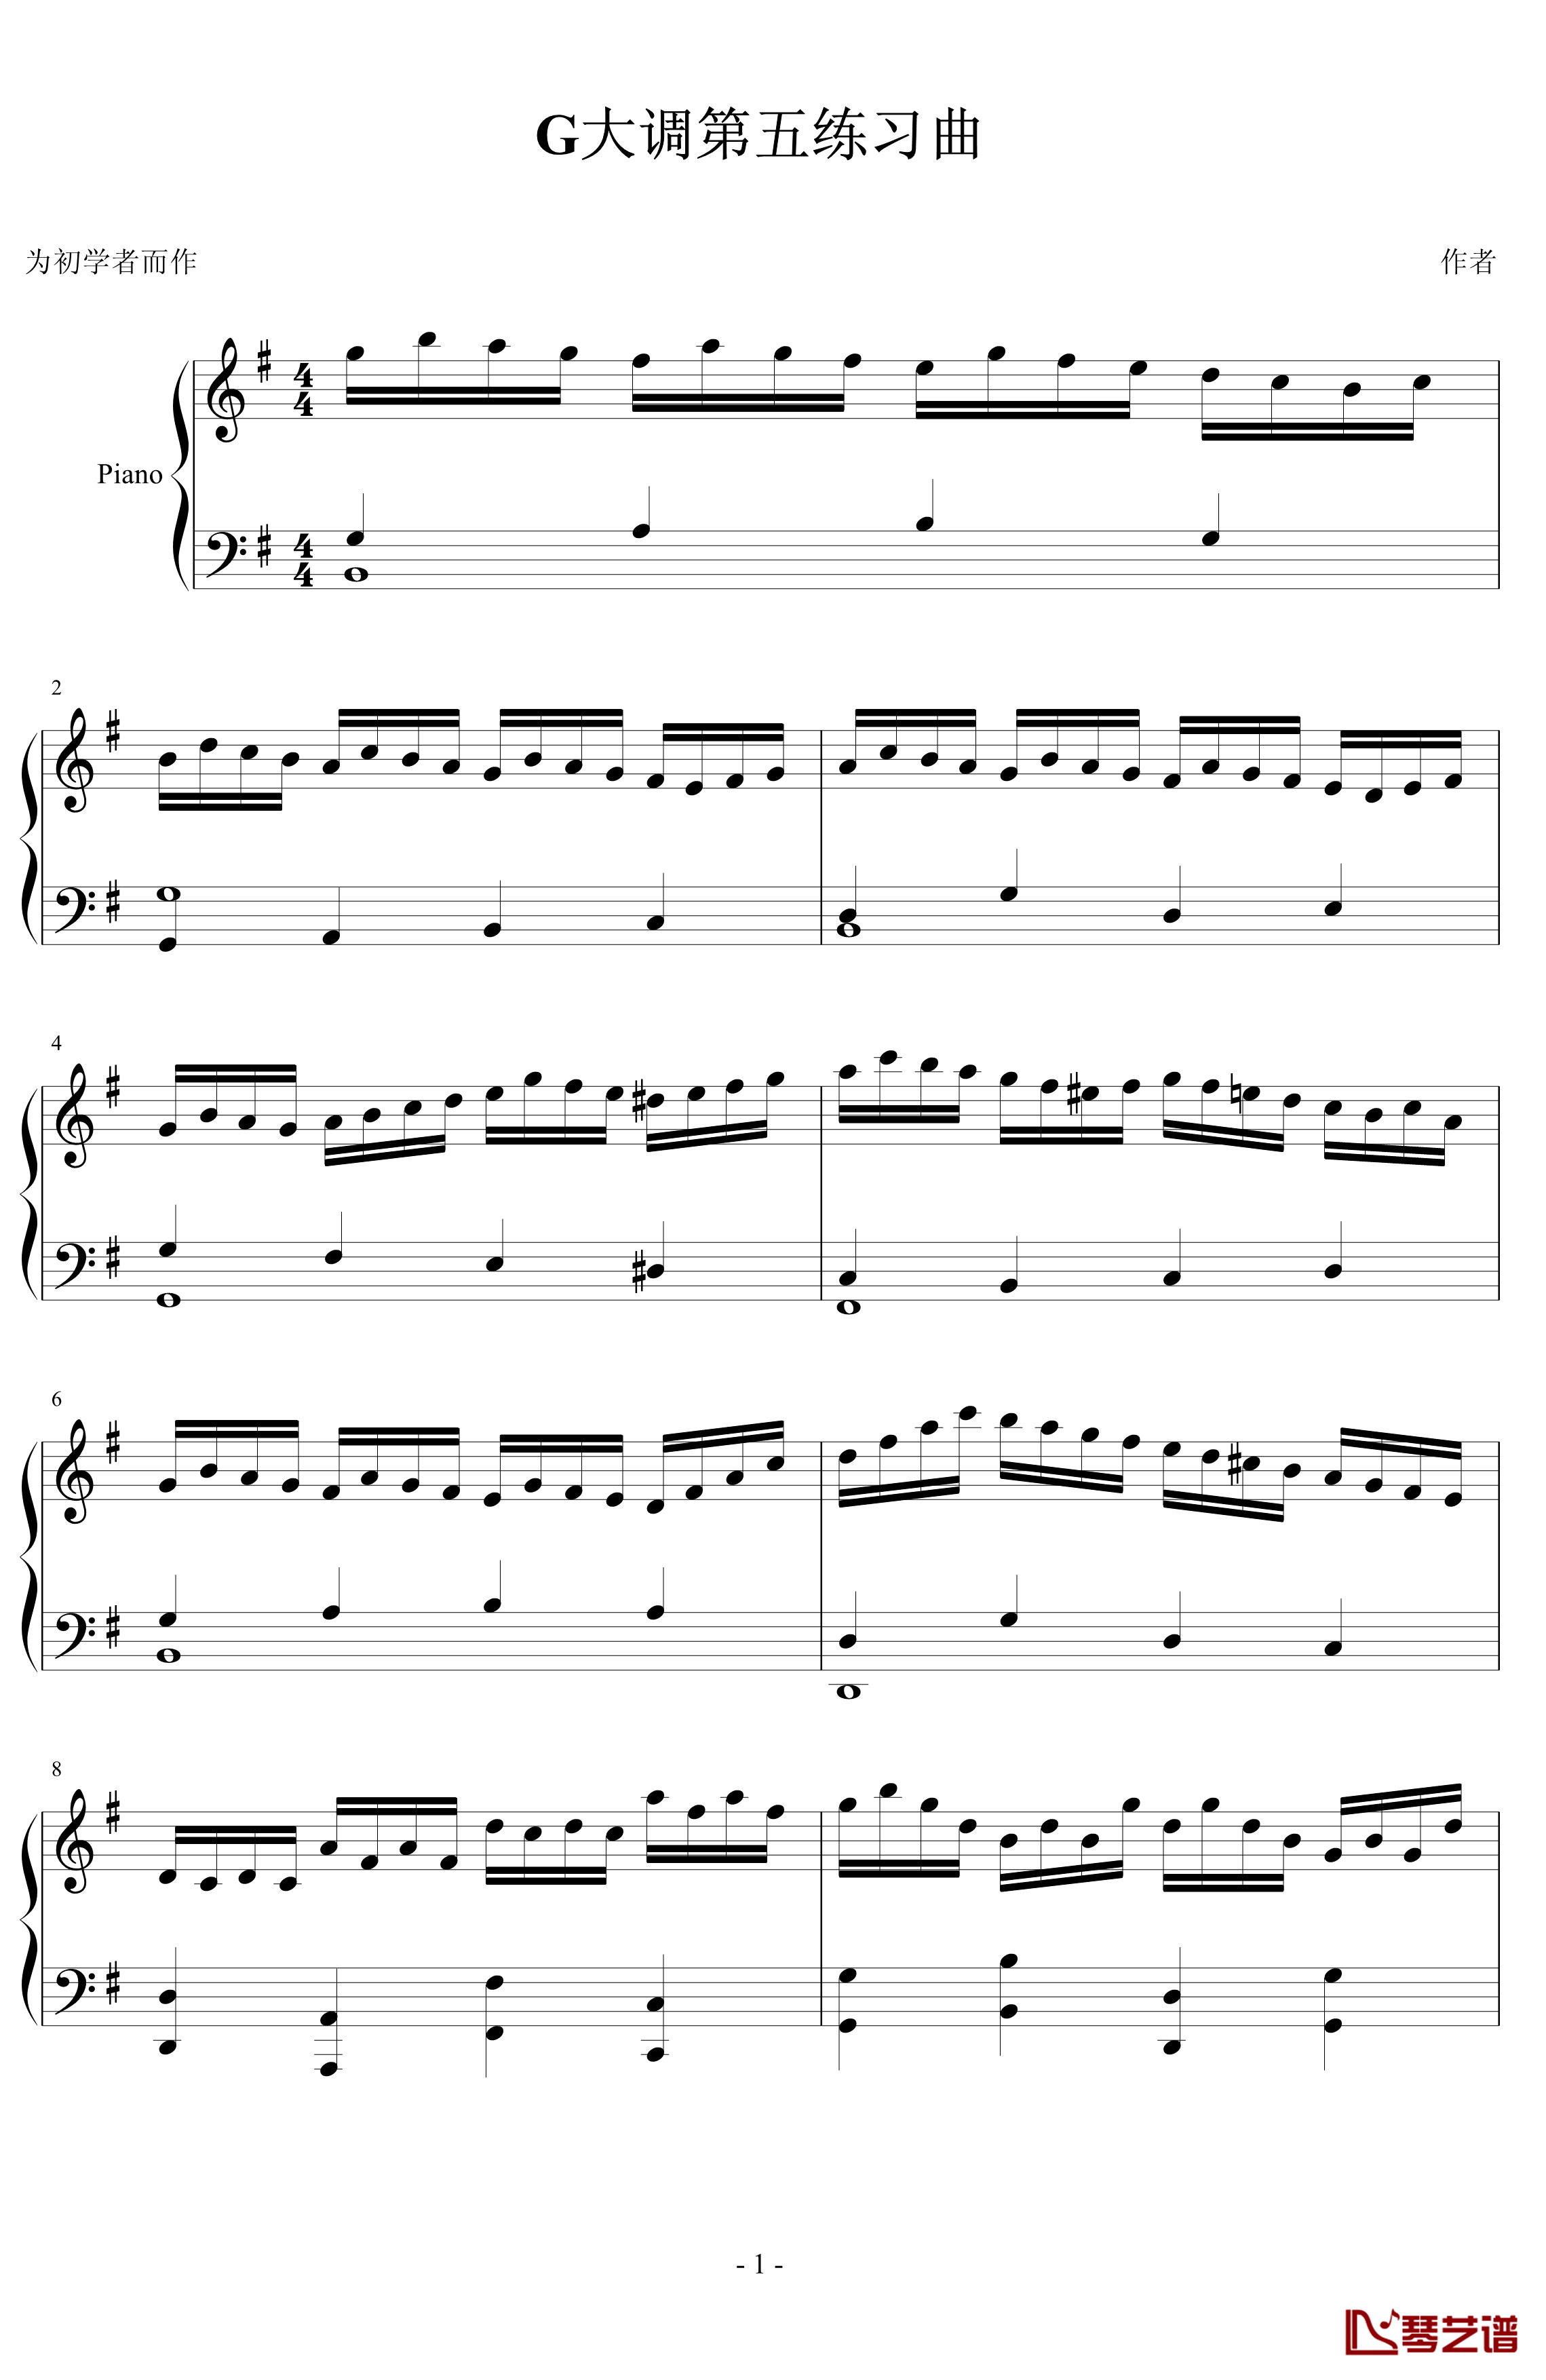 G大调第五练习曲钢琴谱-PARROT1861